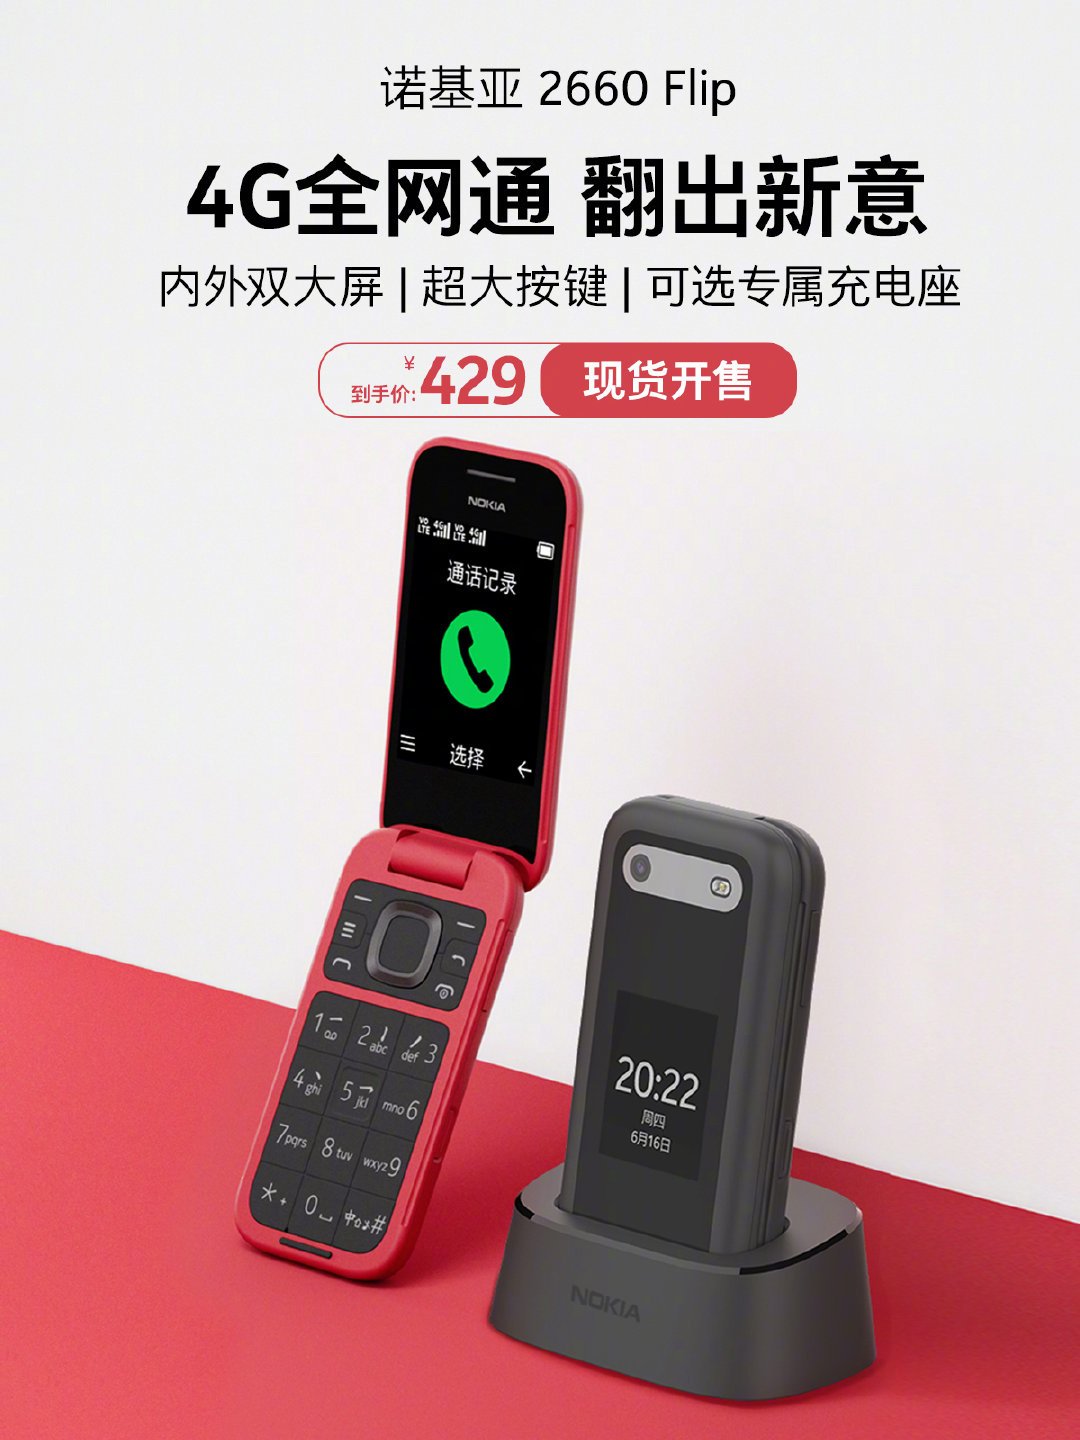 Nokia 2660 Flip Lanzamiento y venta en China